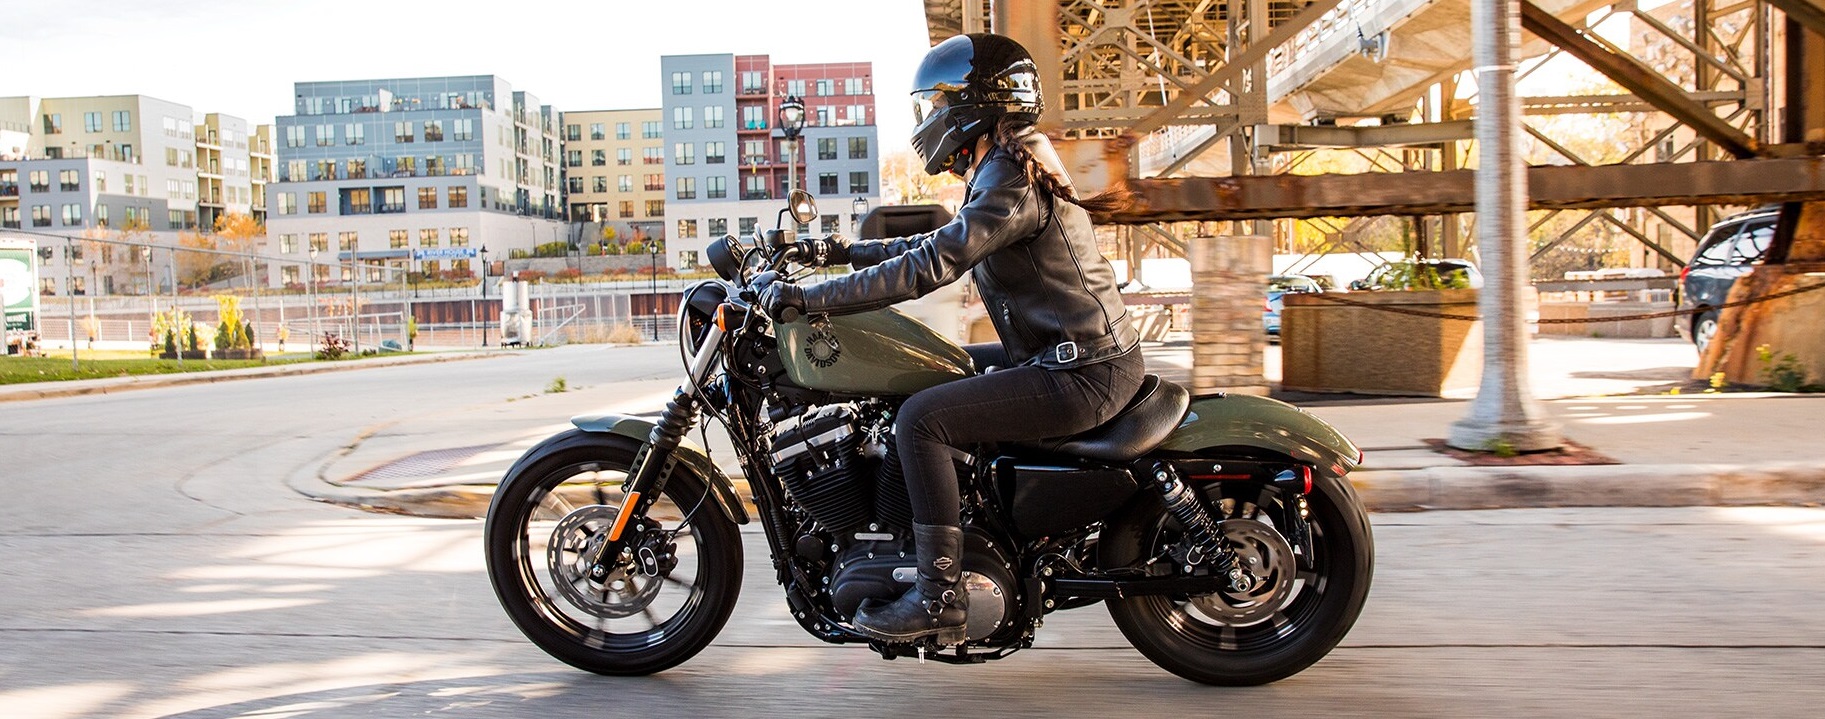 2021 Harley-Davidson® Iron 883™ in Lebanon NH